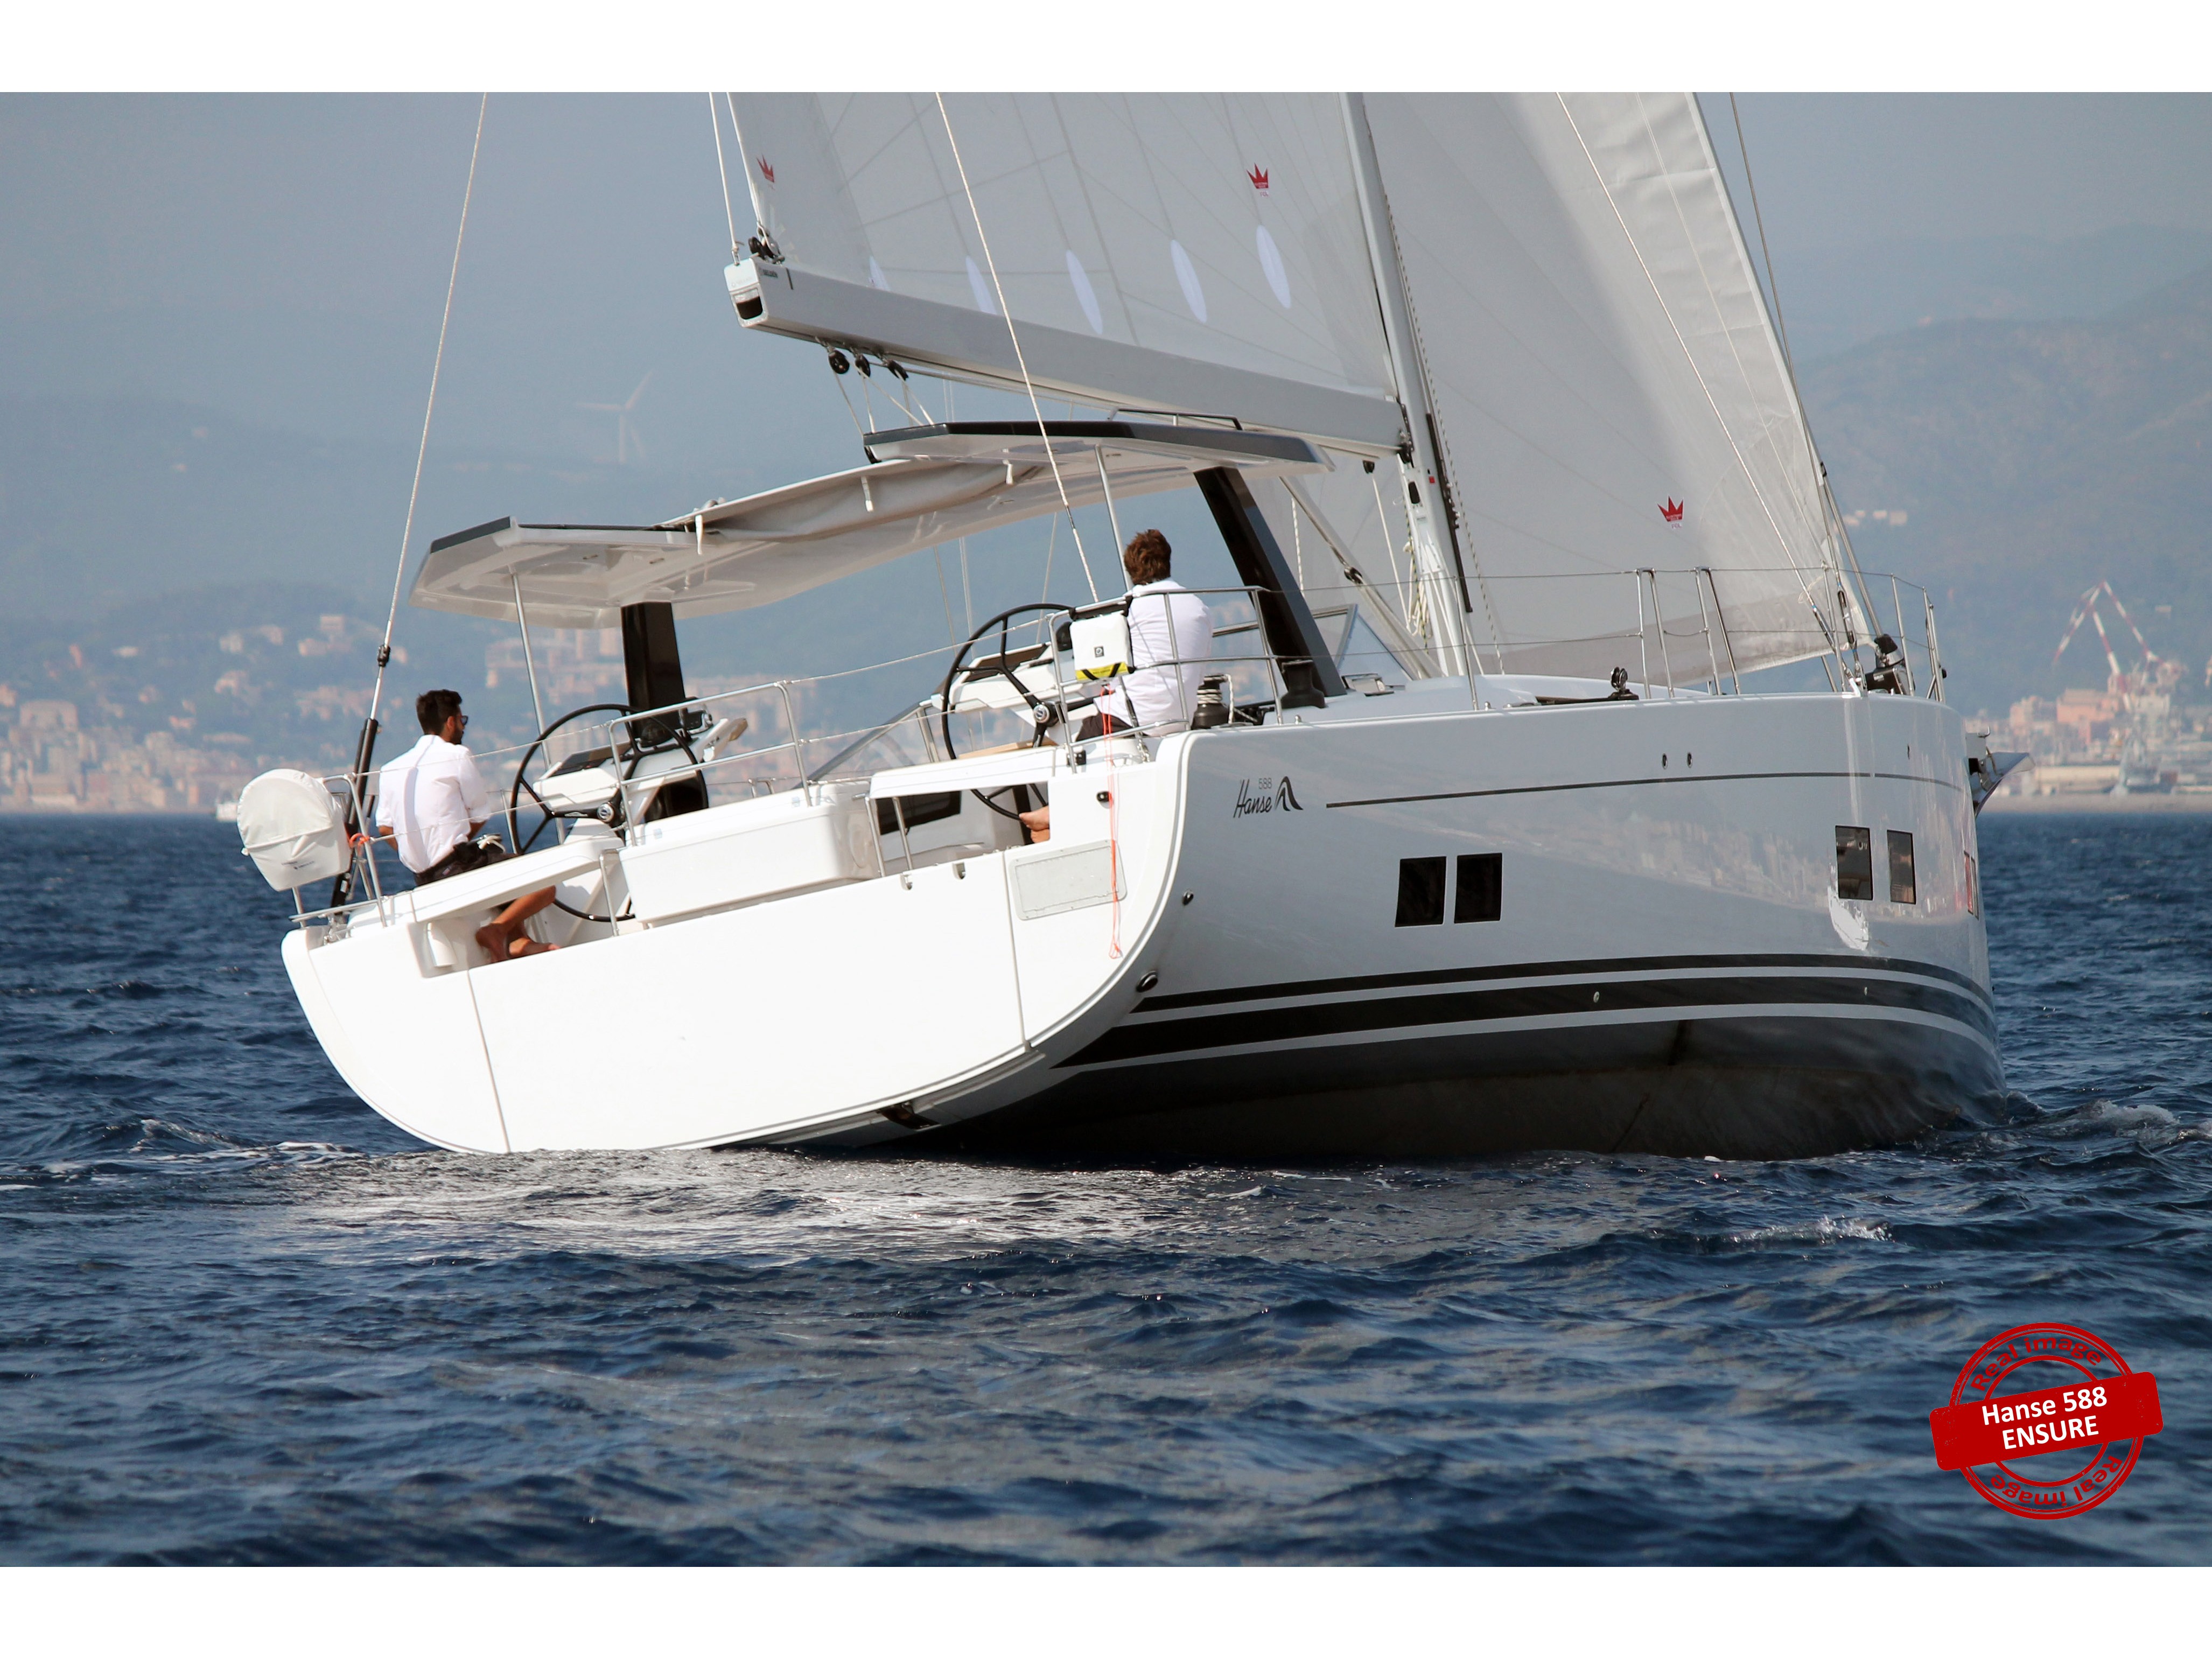 Hanse 588 - Yacht Charter Follonica & Boat hire in Italy Tuscany Follonica Marina di Scarlino 1